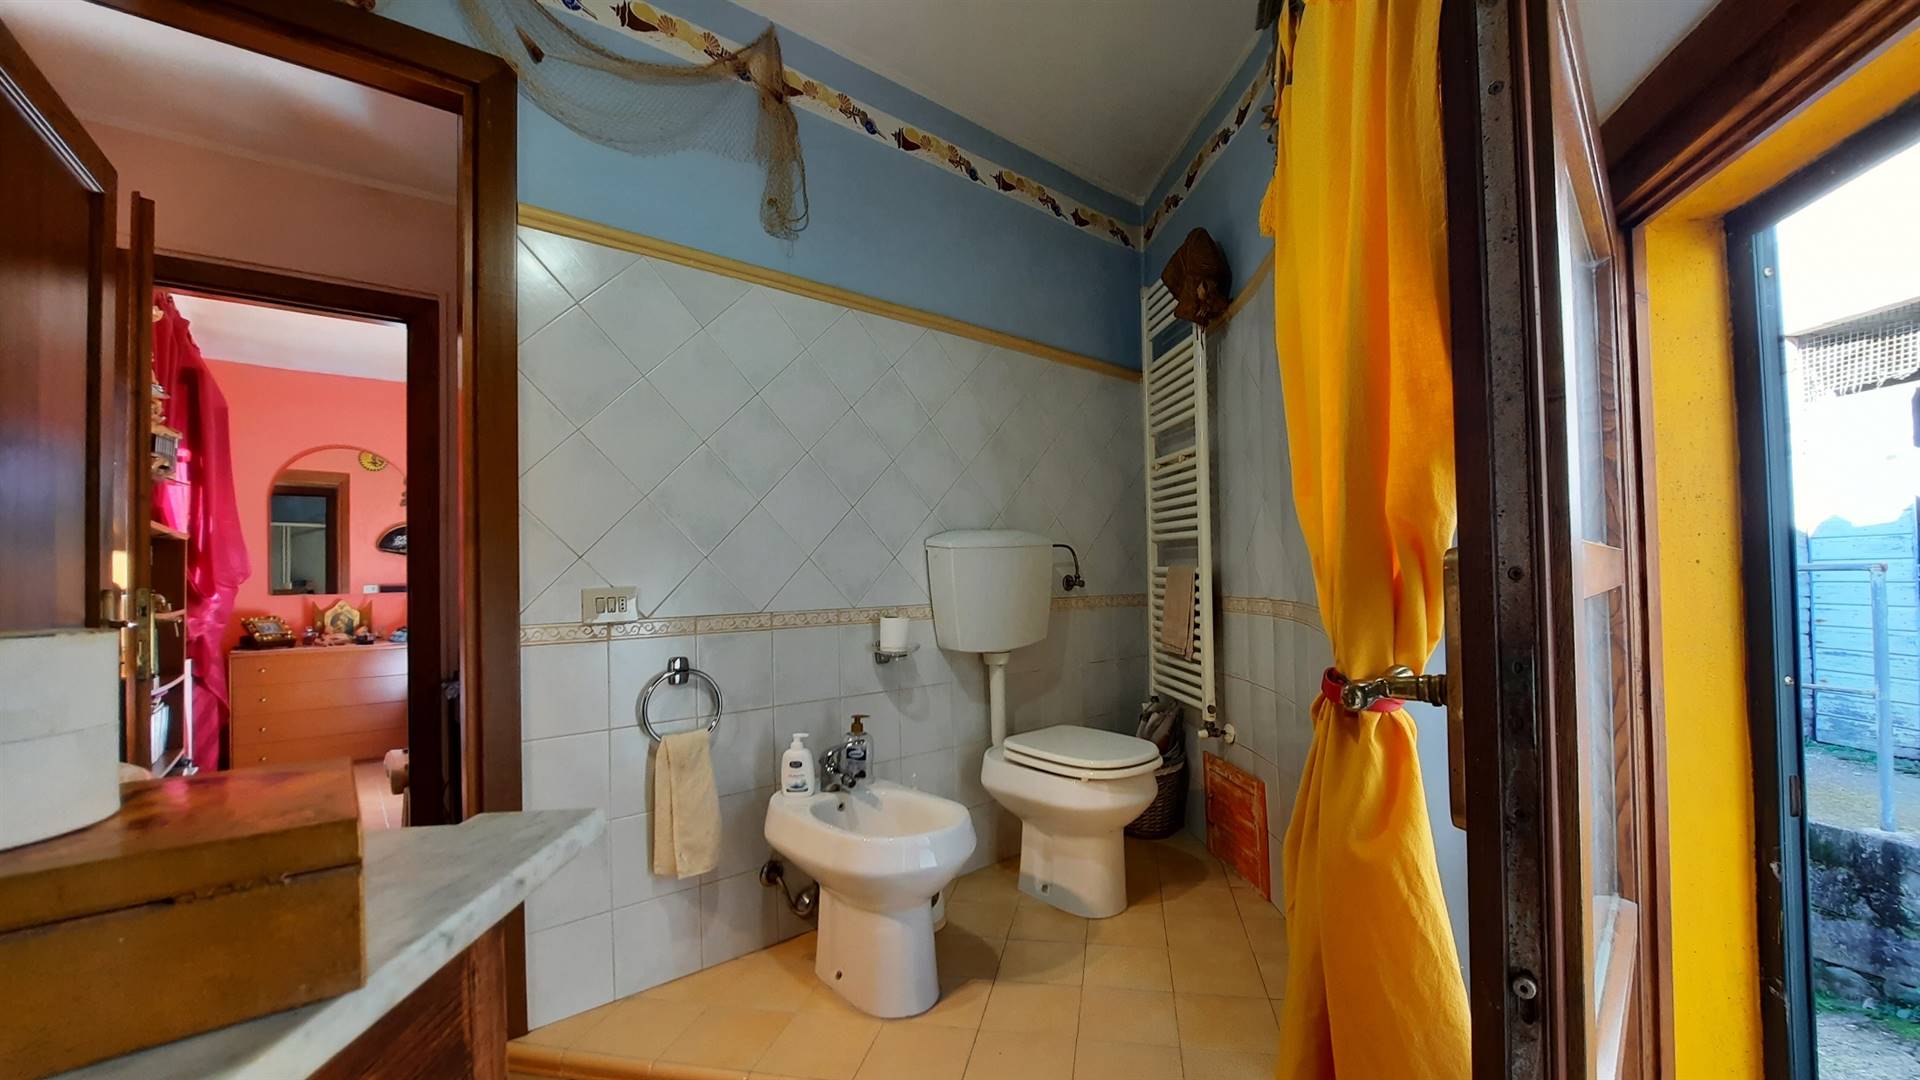 il bagno - the bathroom